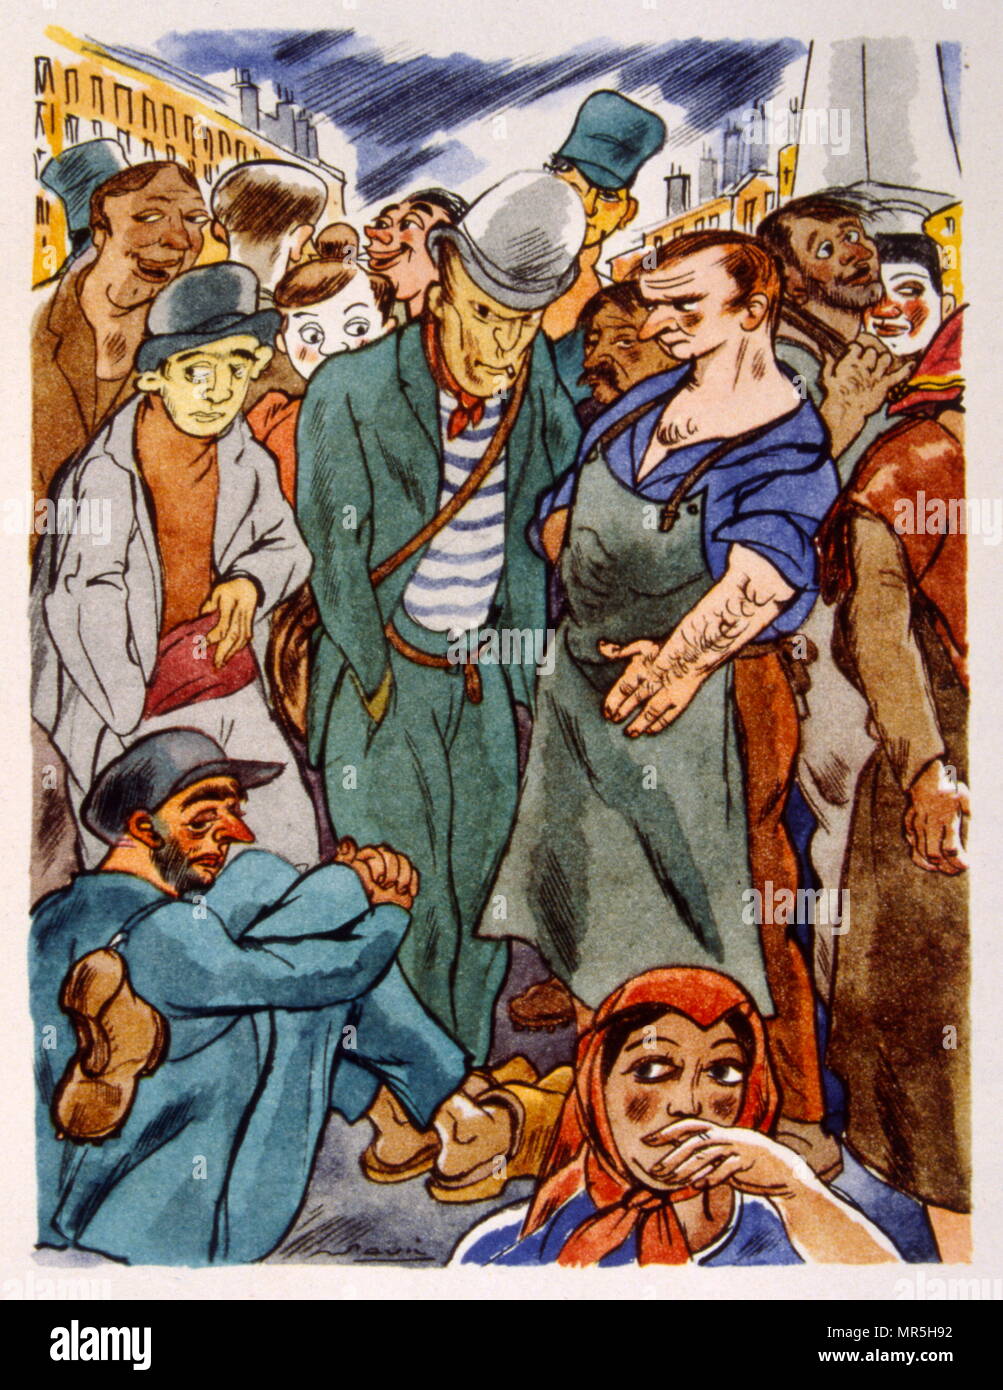 Französische Winzer in einem Marktplatz, 1944, Illustration von Julien Pavil, (1895-1952), französischer 20. Jahrhundert Illustrator, Humorist und Poster Artist. Er illustrierte mehrere Bücher zwischen 1929 und 1945. Stockfoto